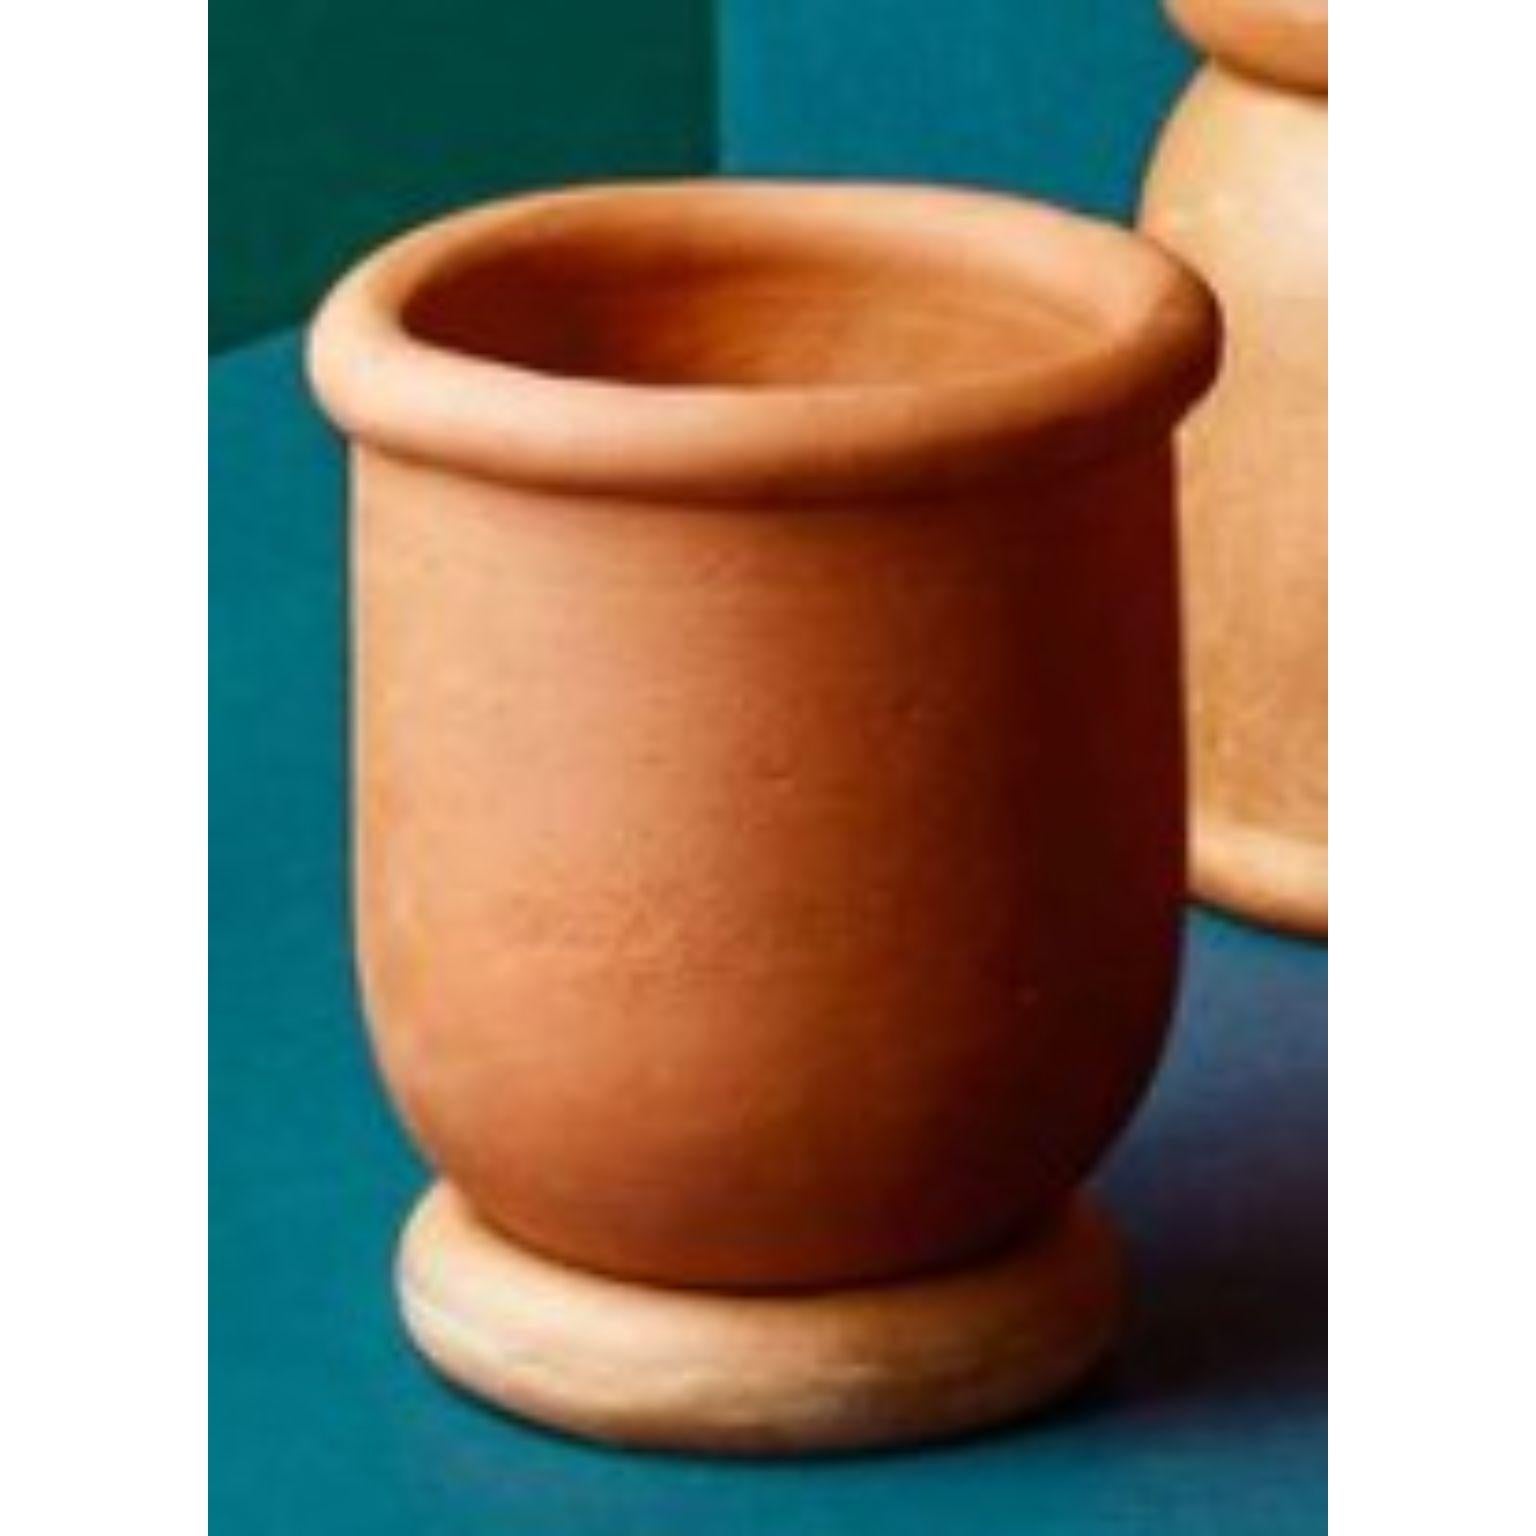 Kleine Mix & Match-Vase von Tero Kuitunen
MATERIAL: Handgefertigte Terrakotta.
Abmessungen: T17 x H22 cm
Ebenfalls erhältlich: Zwei verschiedene Größen, die auf verschiedene Weise zusammengestellt werden können.

Handgefertigte